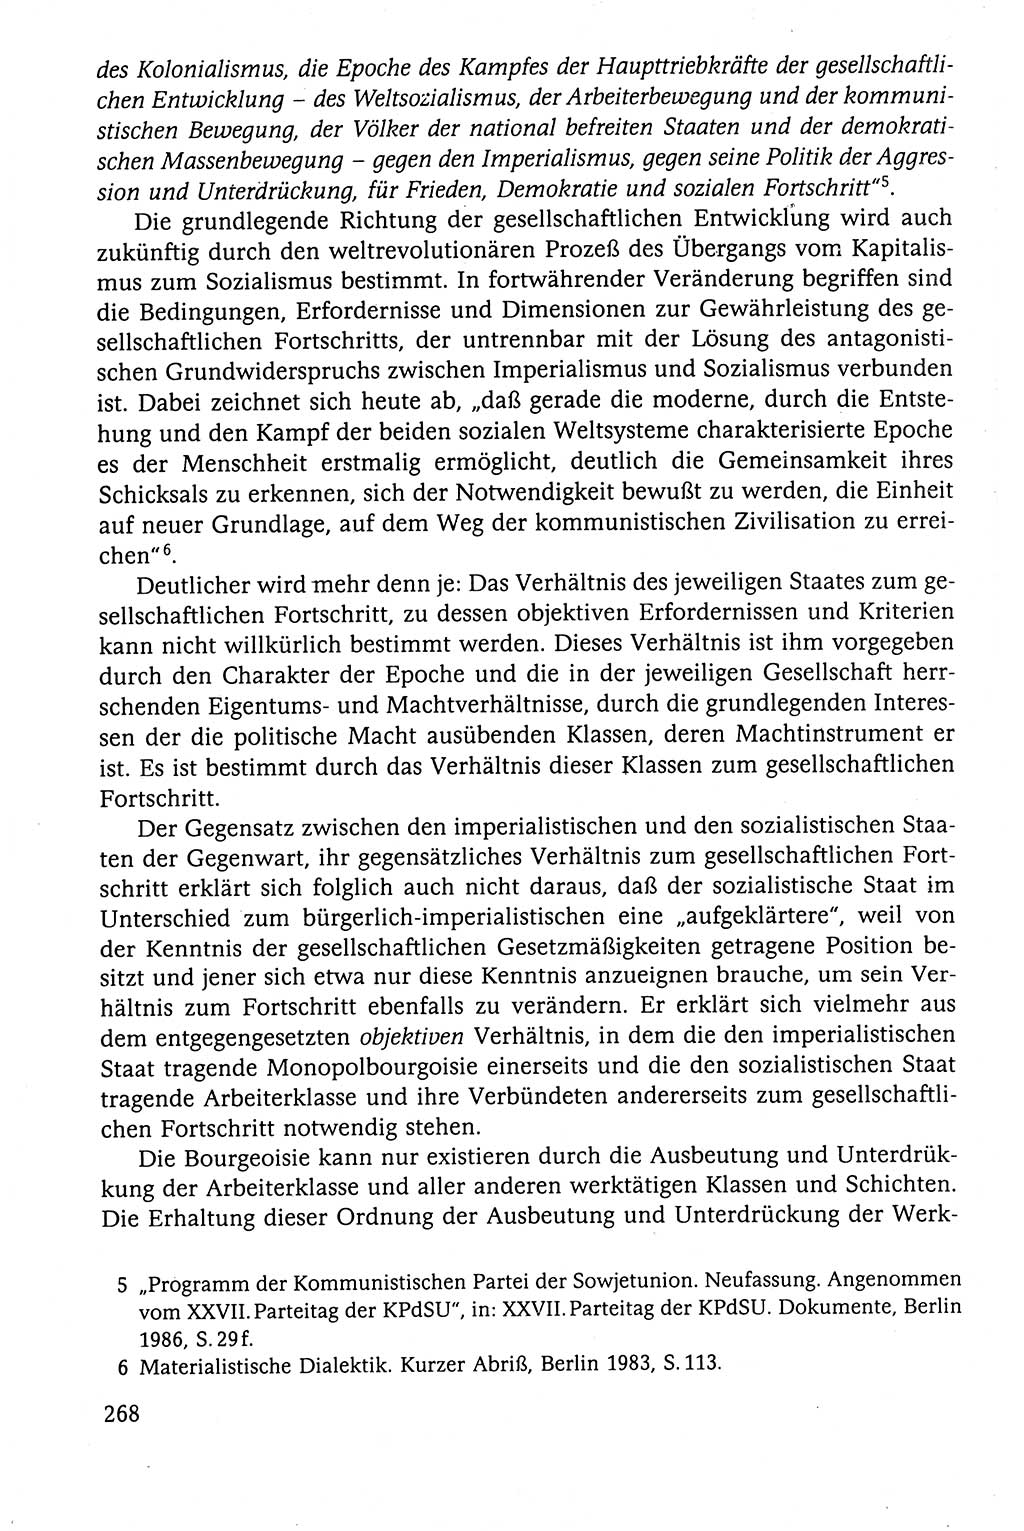 Der Staat im politischen System der DDR (Deutsche Demokratische Republik) 1986, Seite 268 (St. pol. Sys. DDR 1986, S. 268)